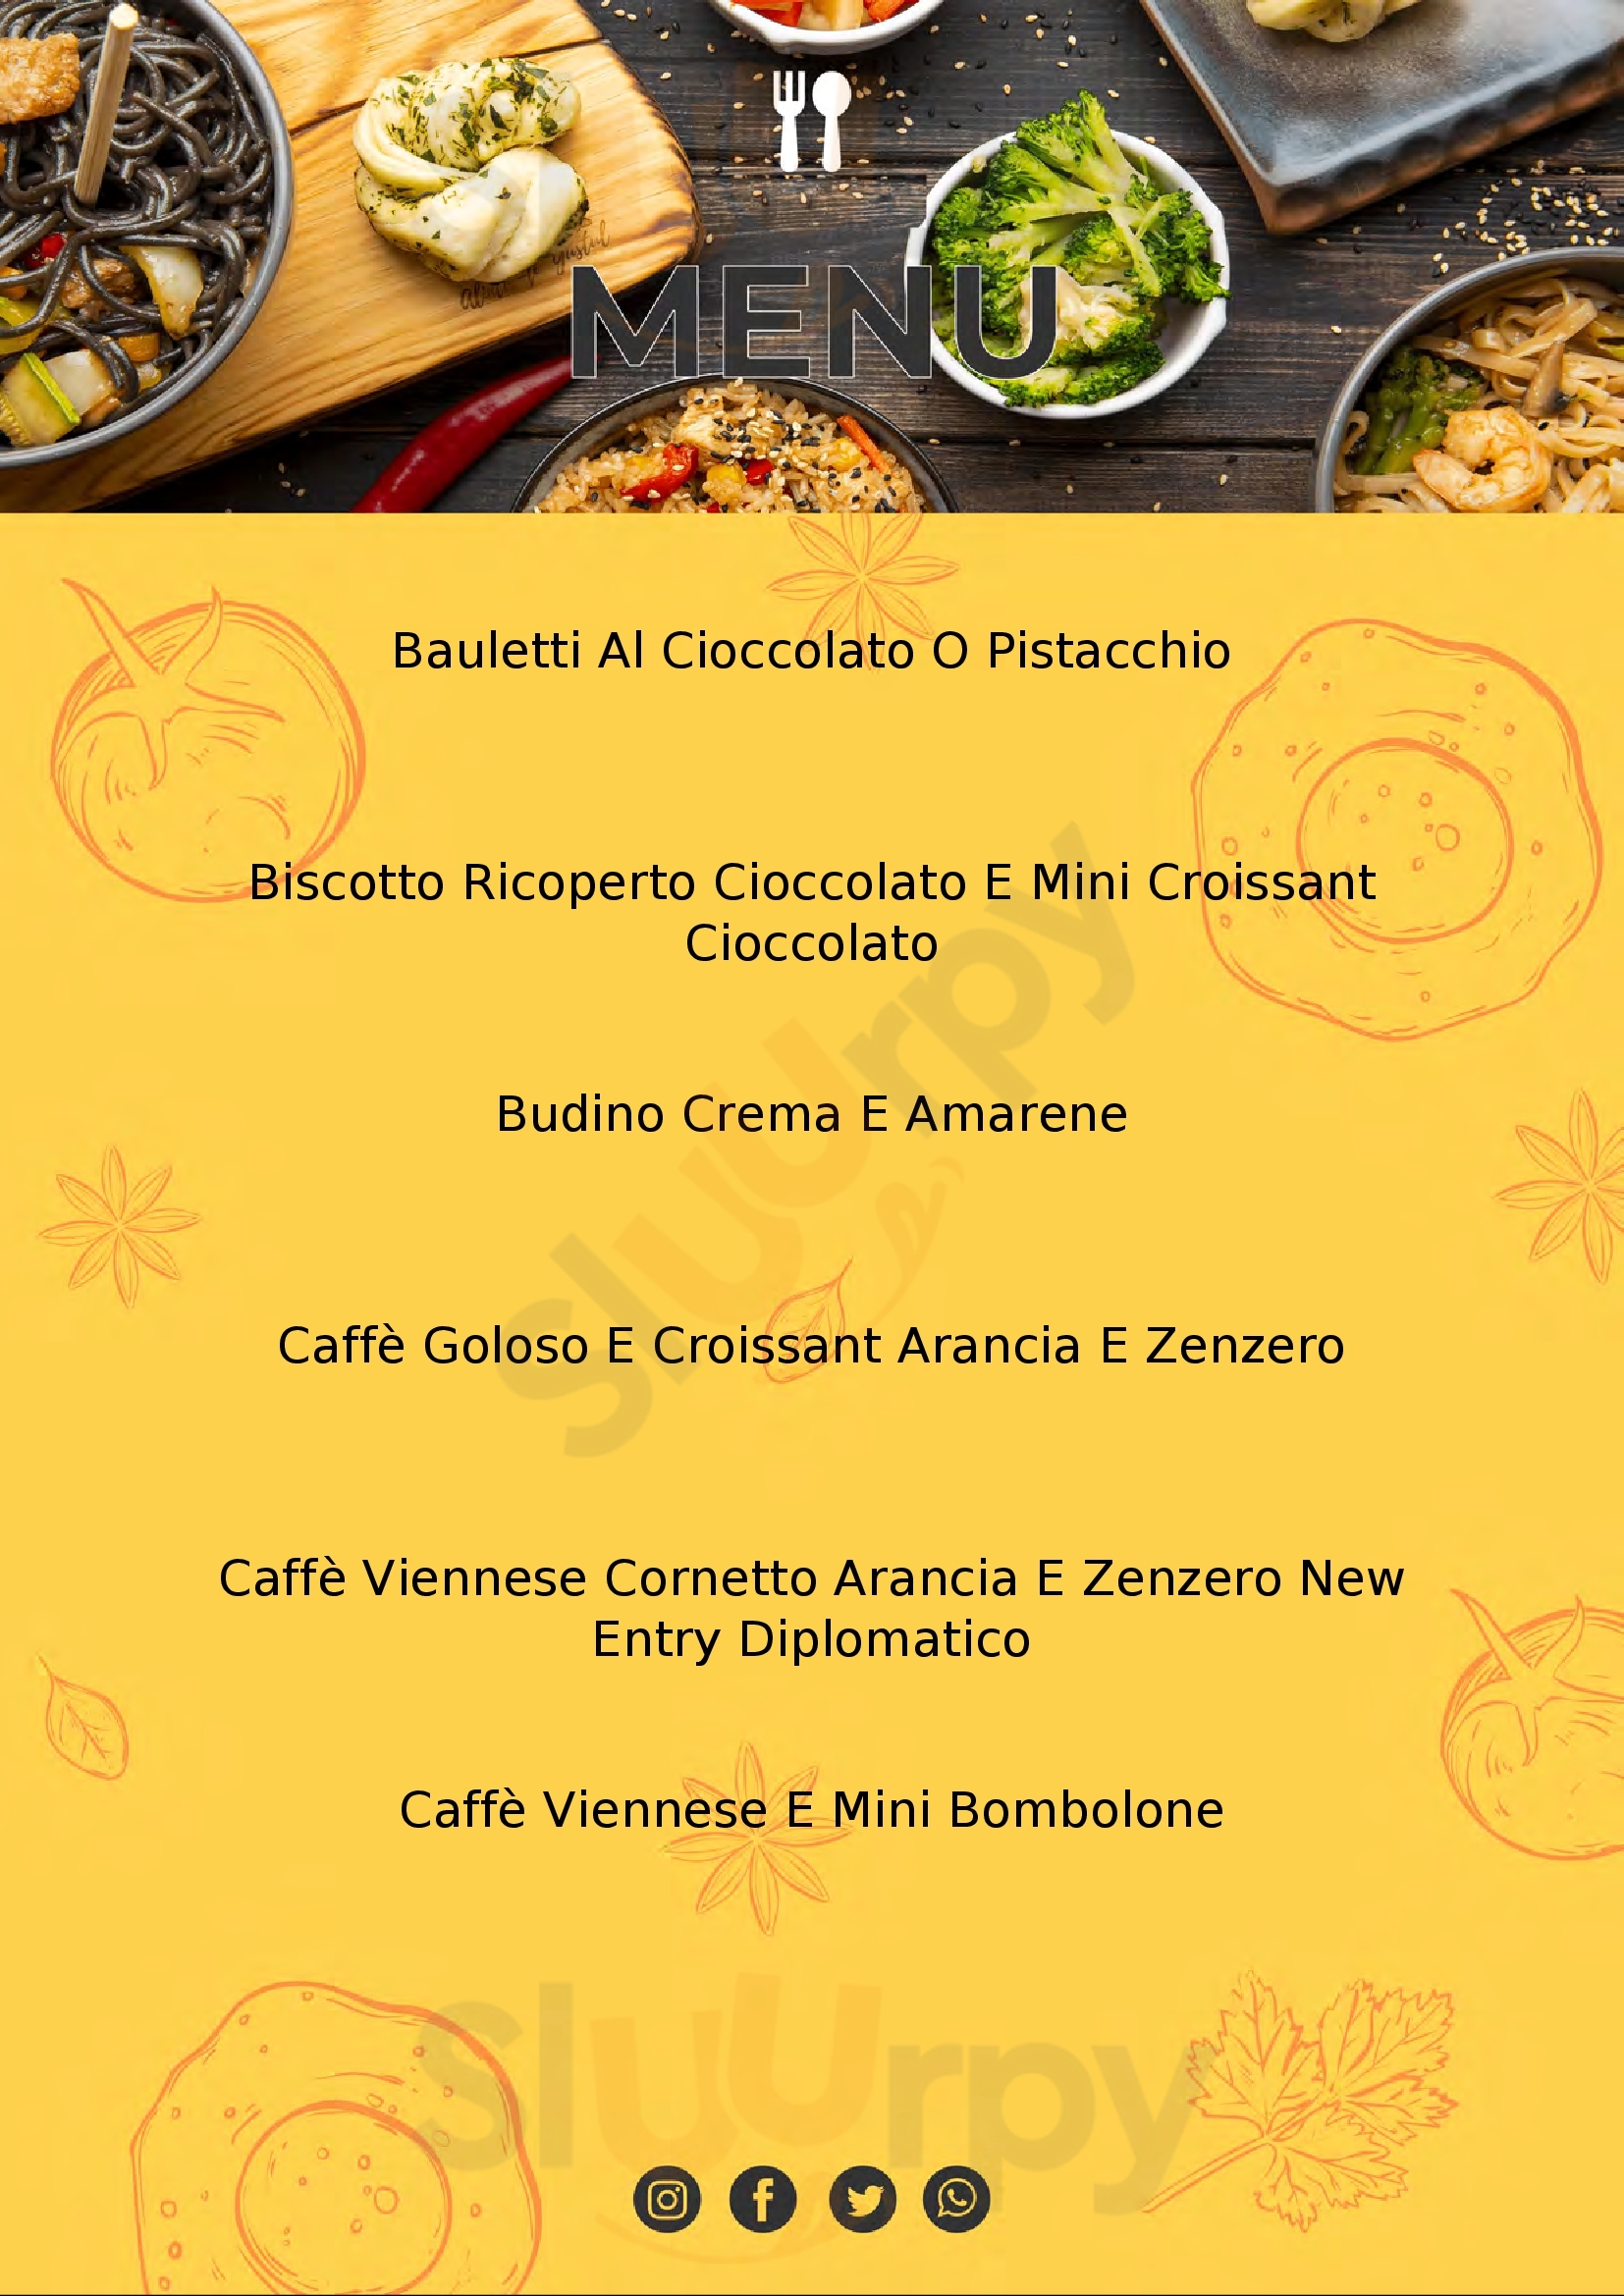 PASTICCERIA CAFFE' CHICCO D'ORO Prato menù 1 pagina